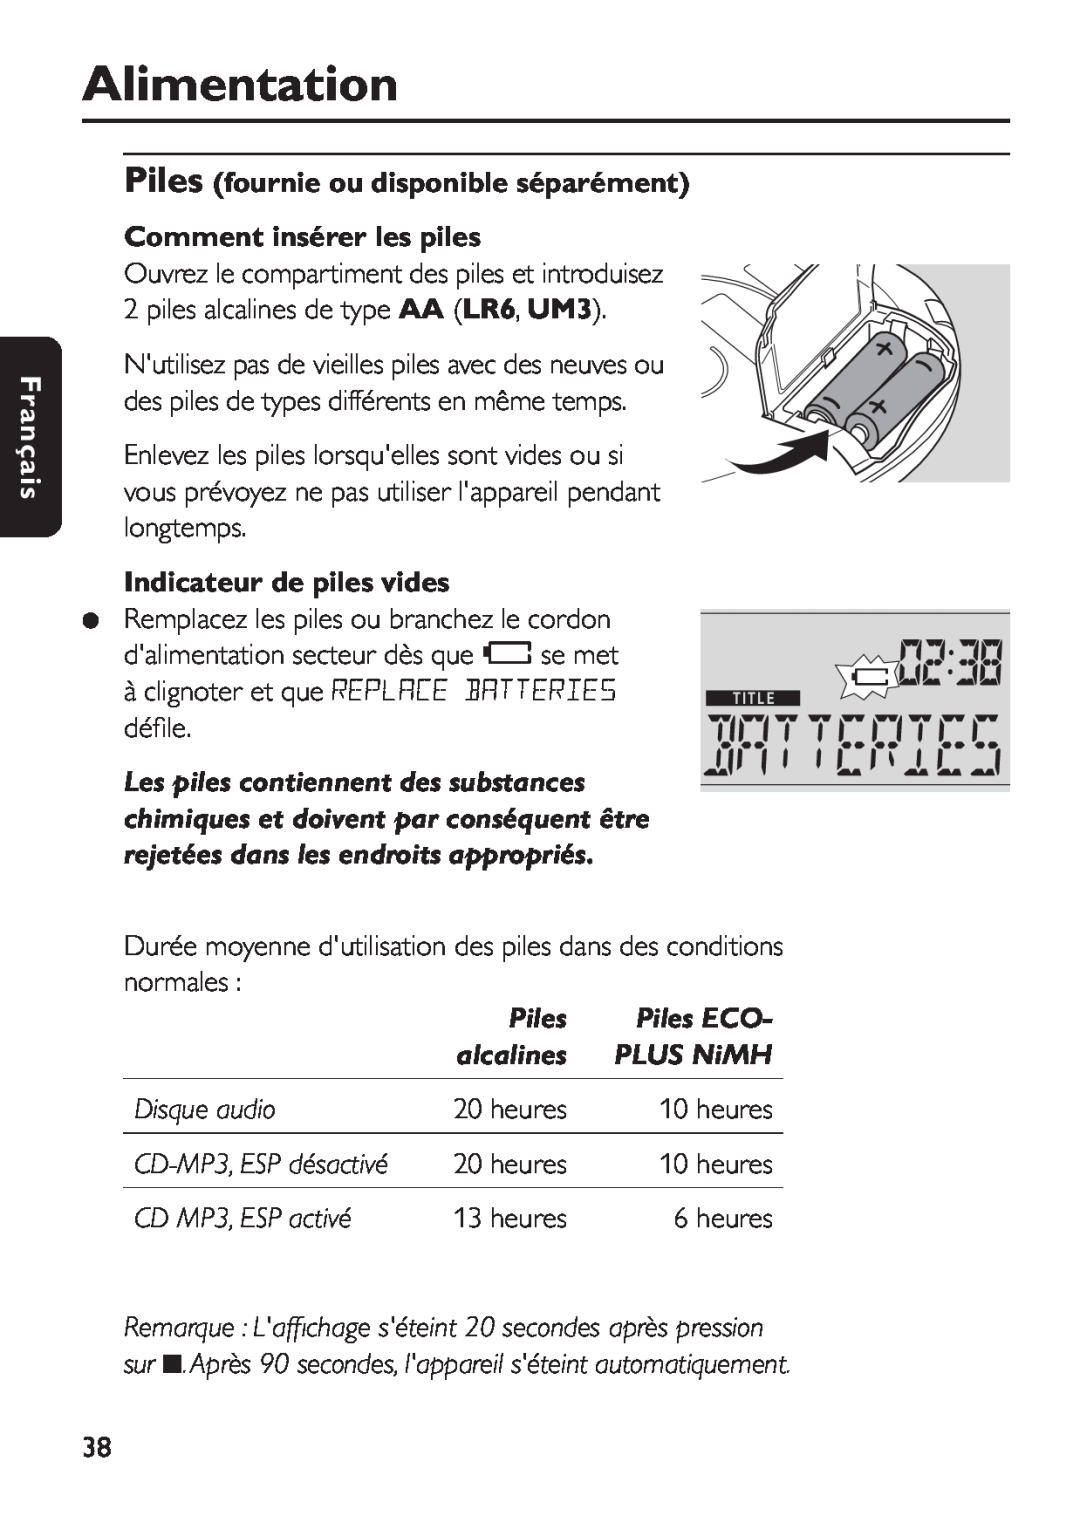 Philips EXP 501/00 Alimentation, Piles fournie ou disponible séparément Comment insérer les piles, Piles ECO, Disque audio 